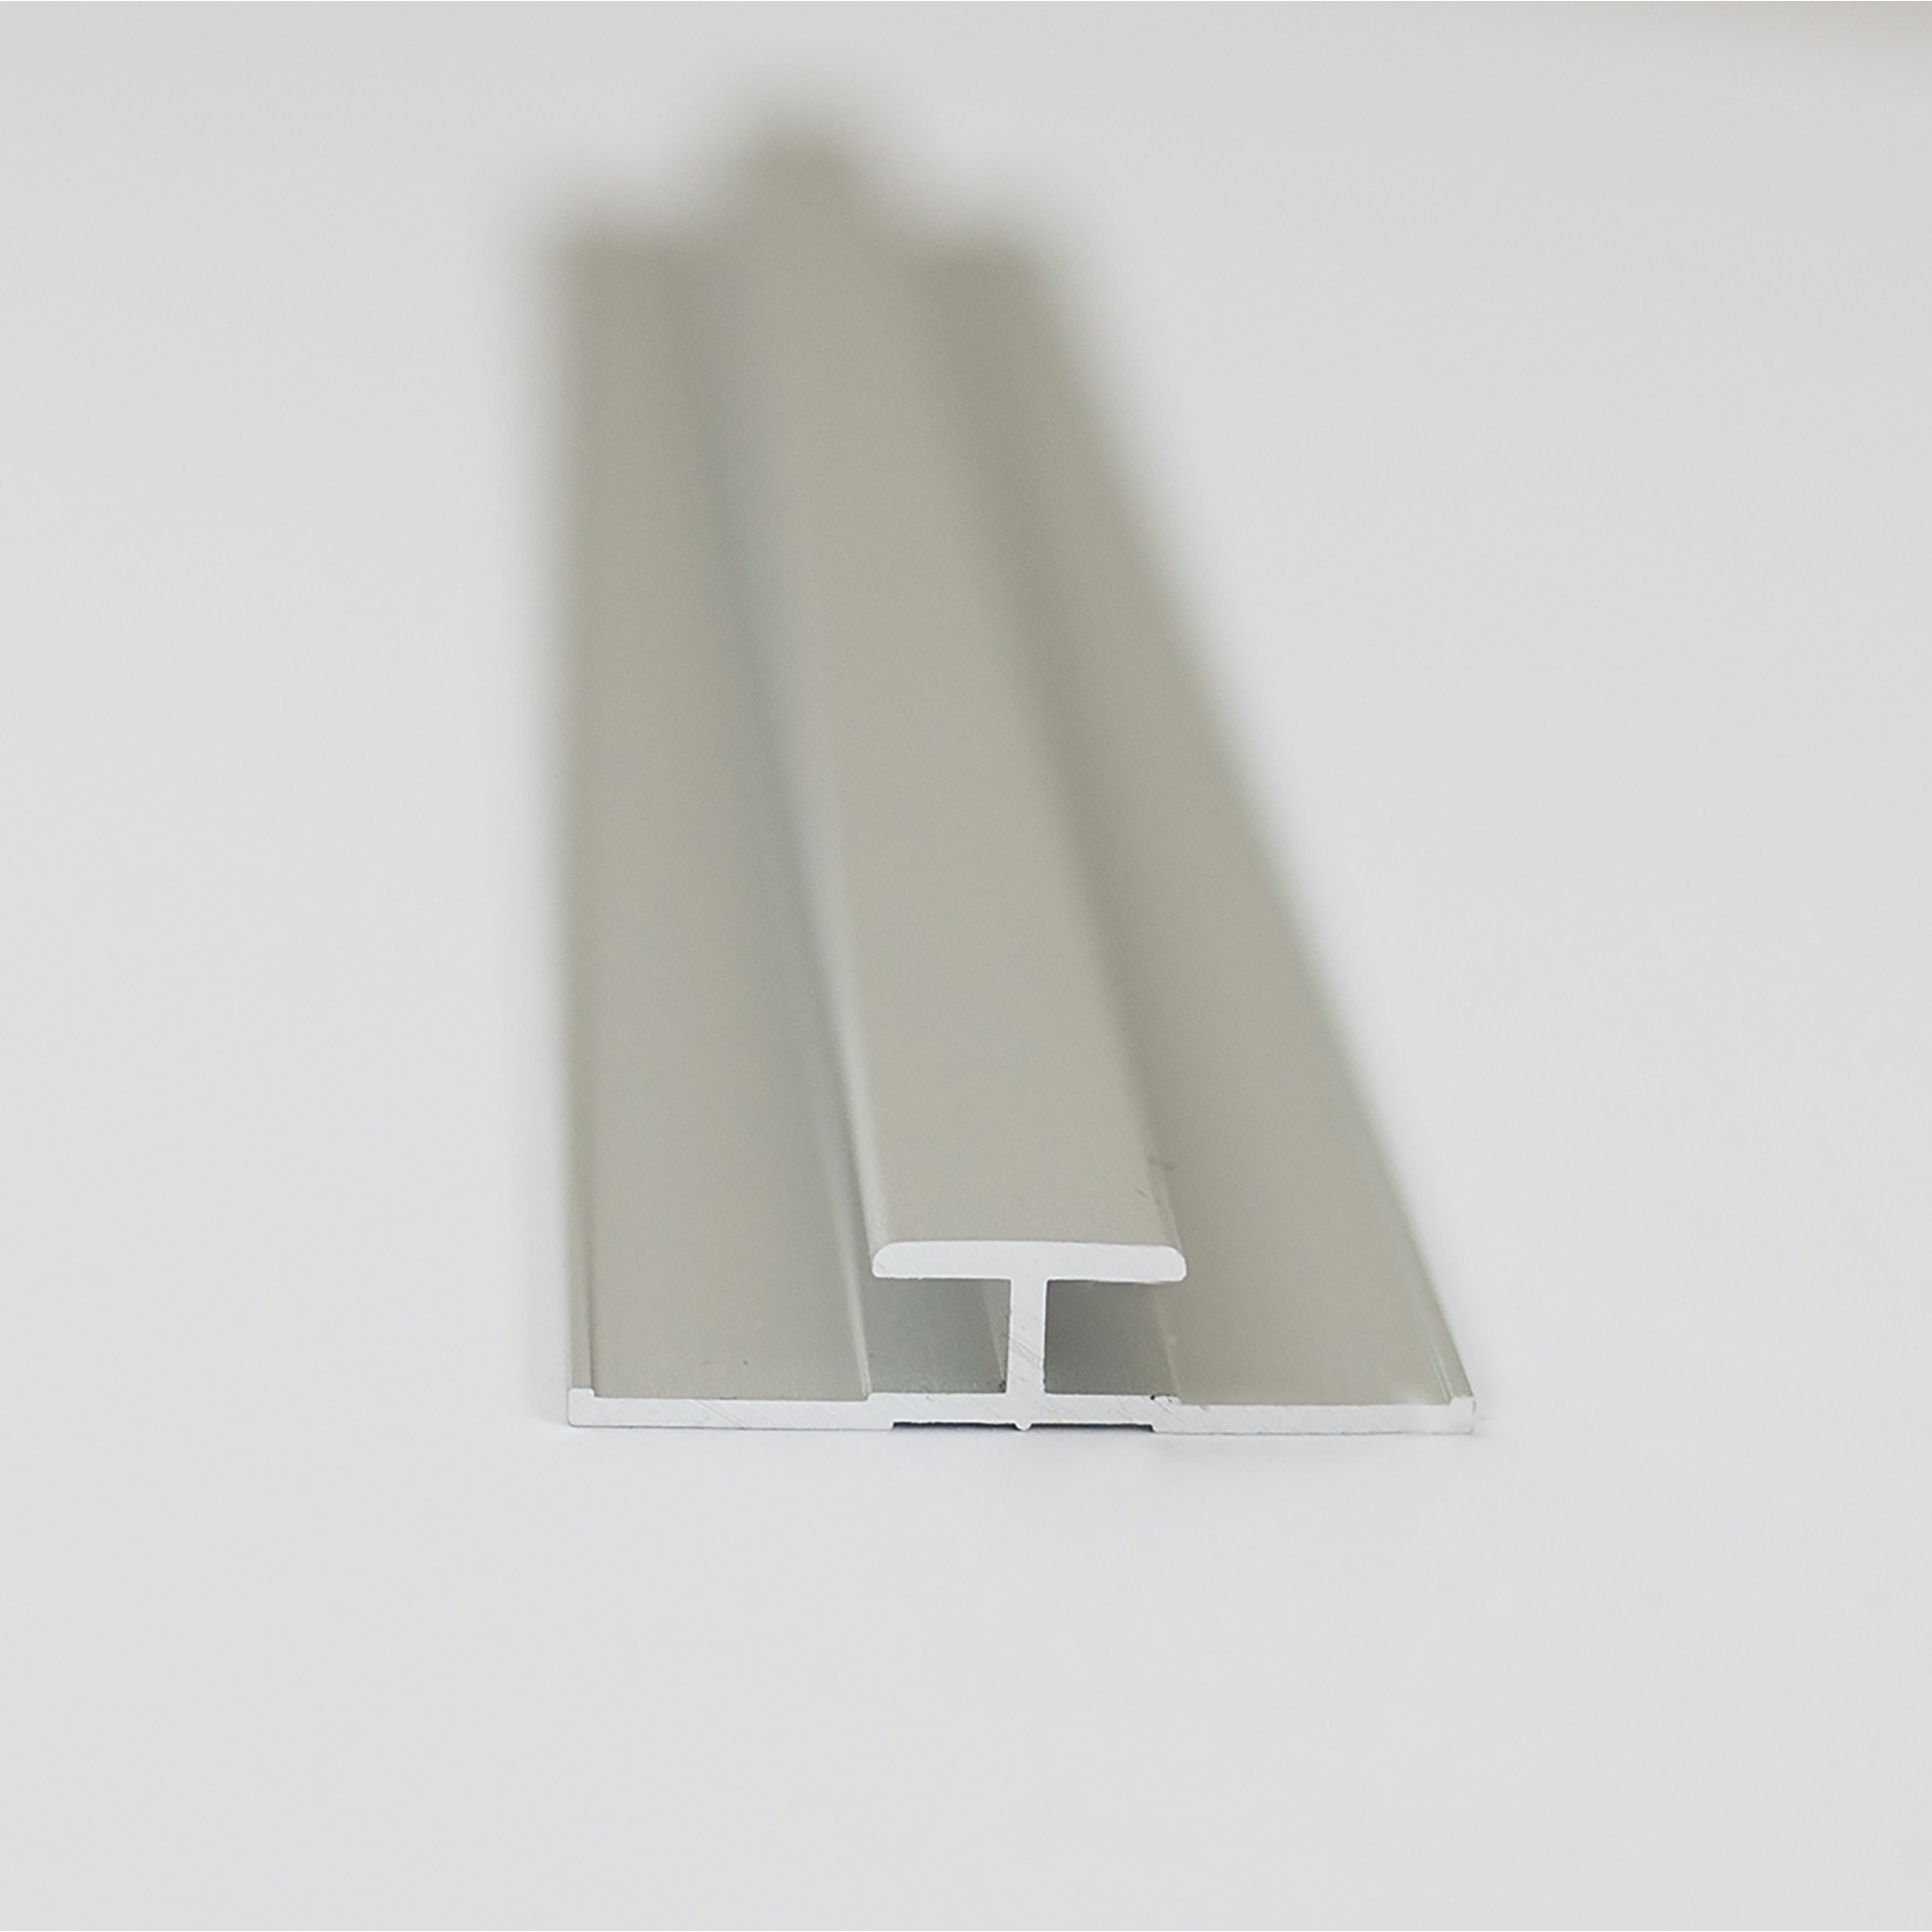 Verbindungsprofil für Rückwandplatten, alu silber matt, 2550 mm + product picture